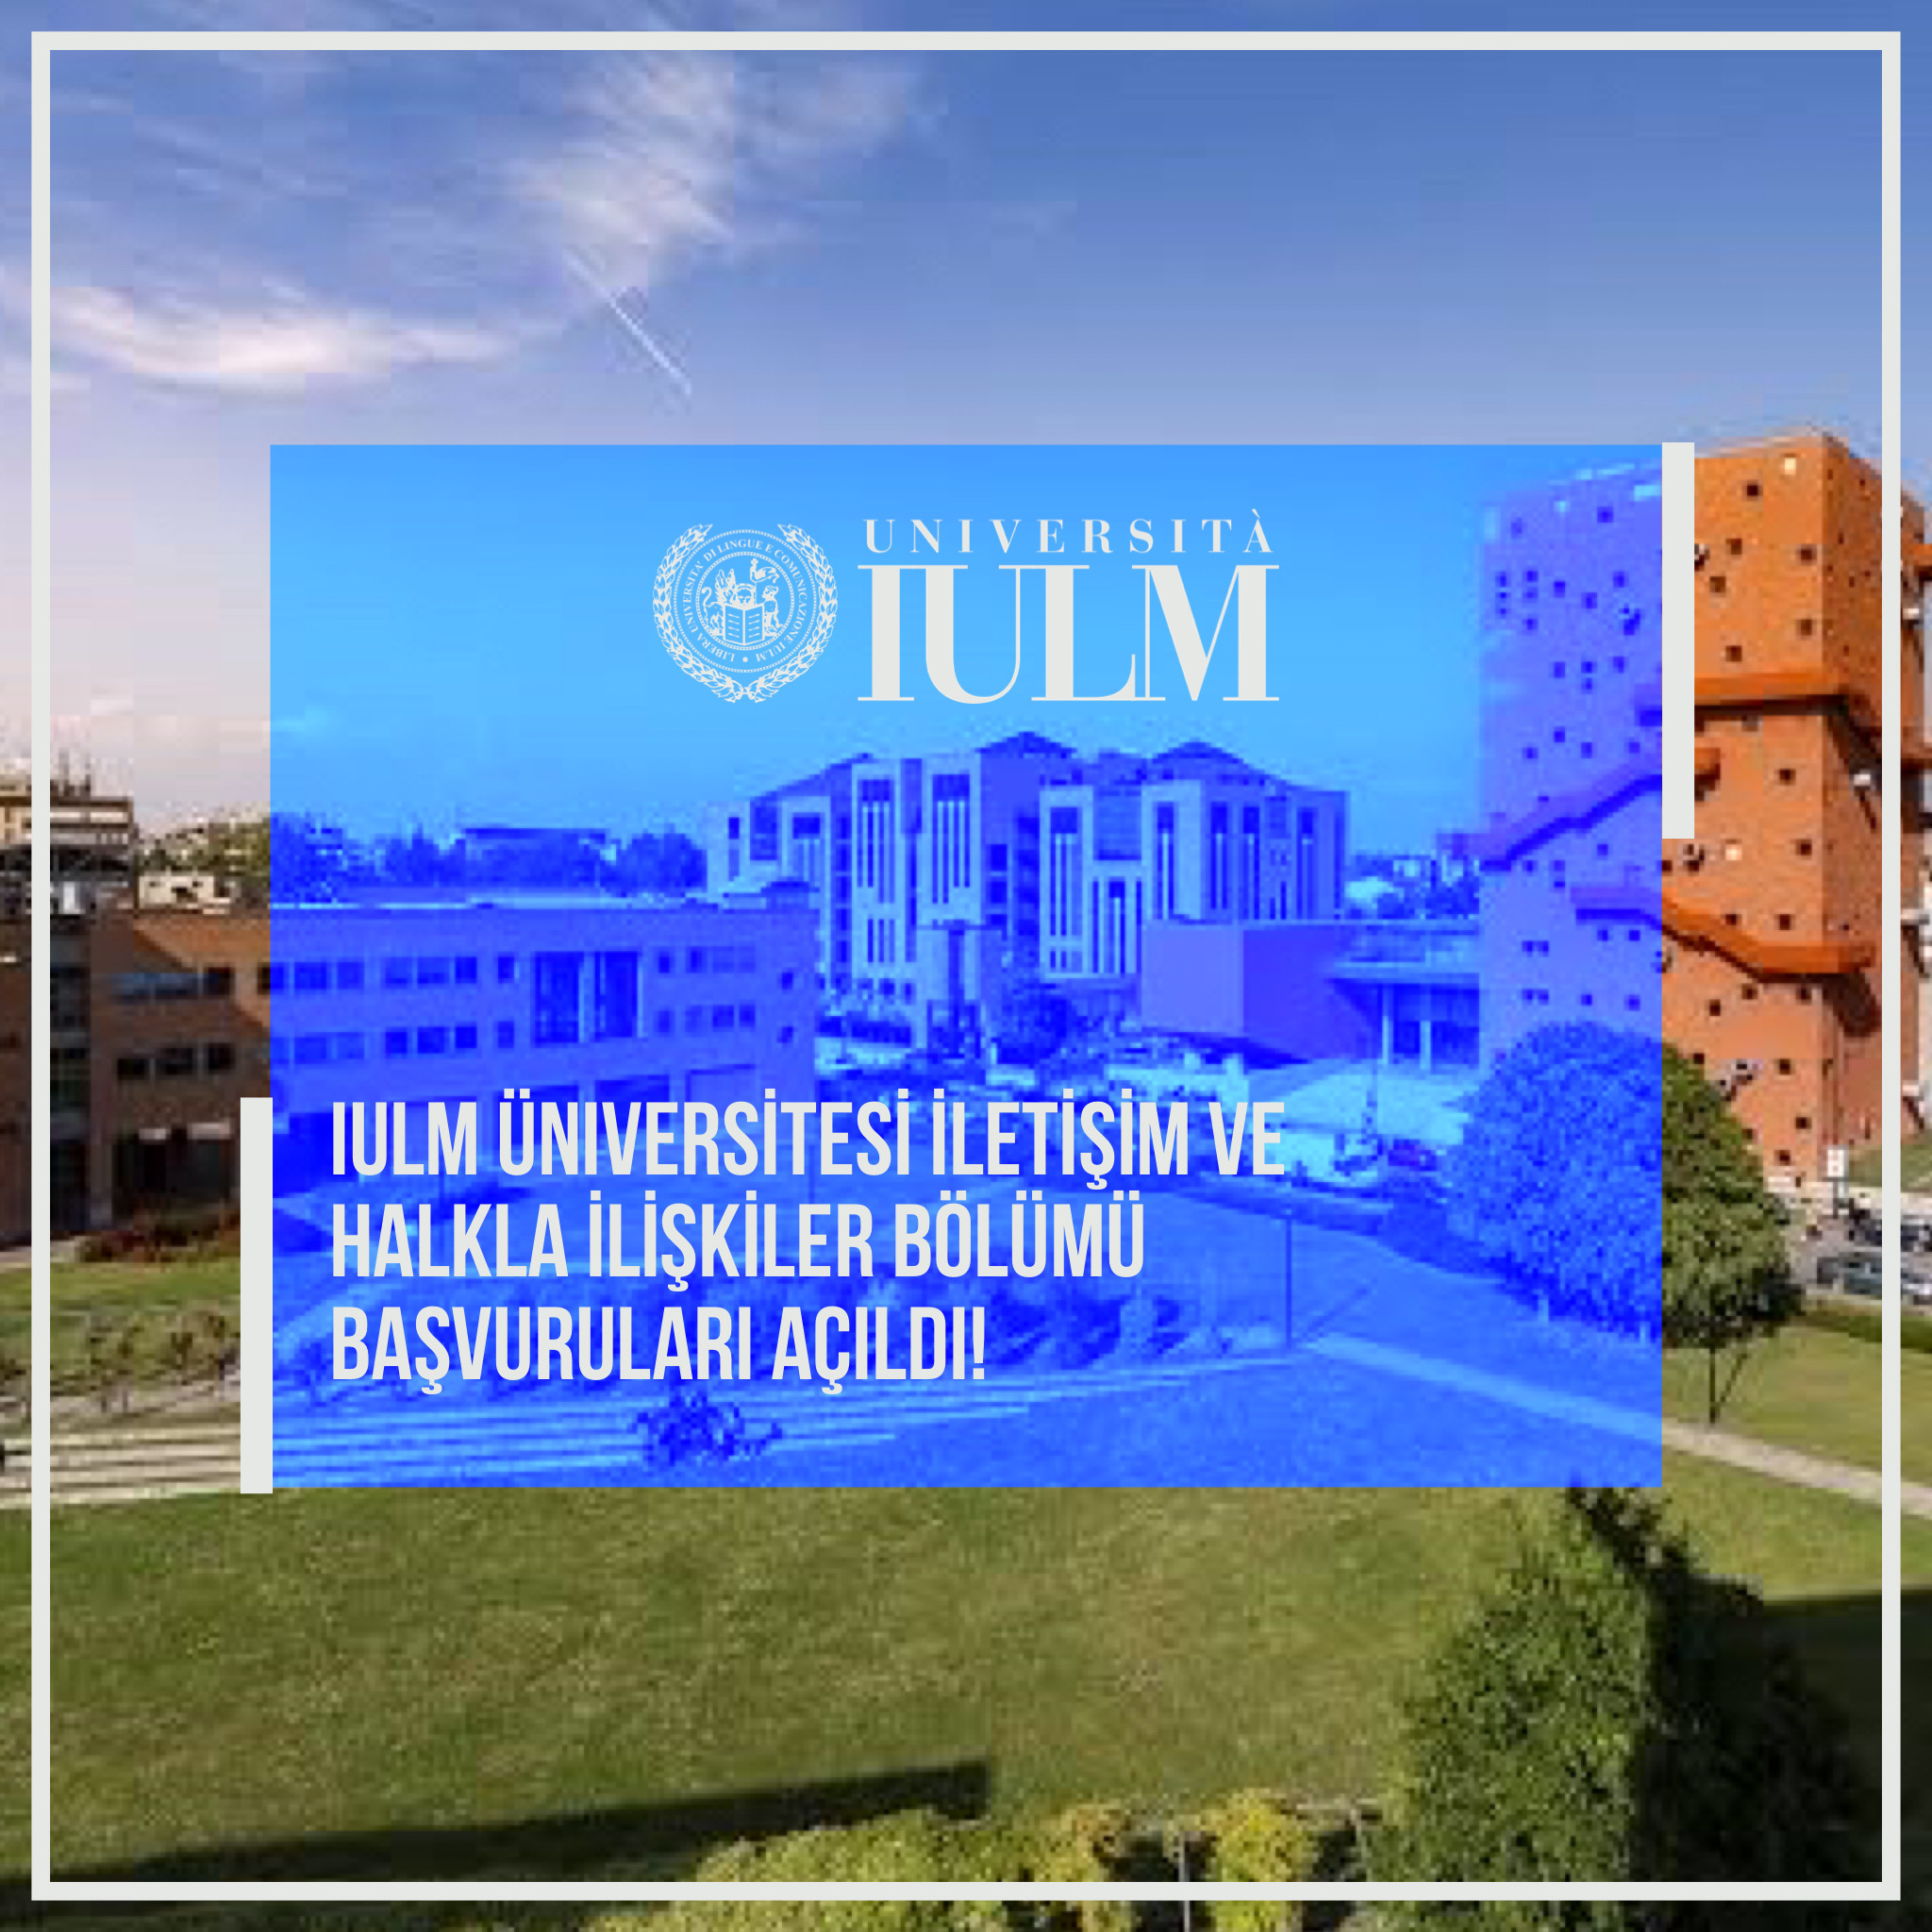 Milano IULM Üniversitesi’nin Corporate Communication & Public Relations lisans bölümü başvuruları açıldı!